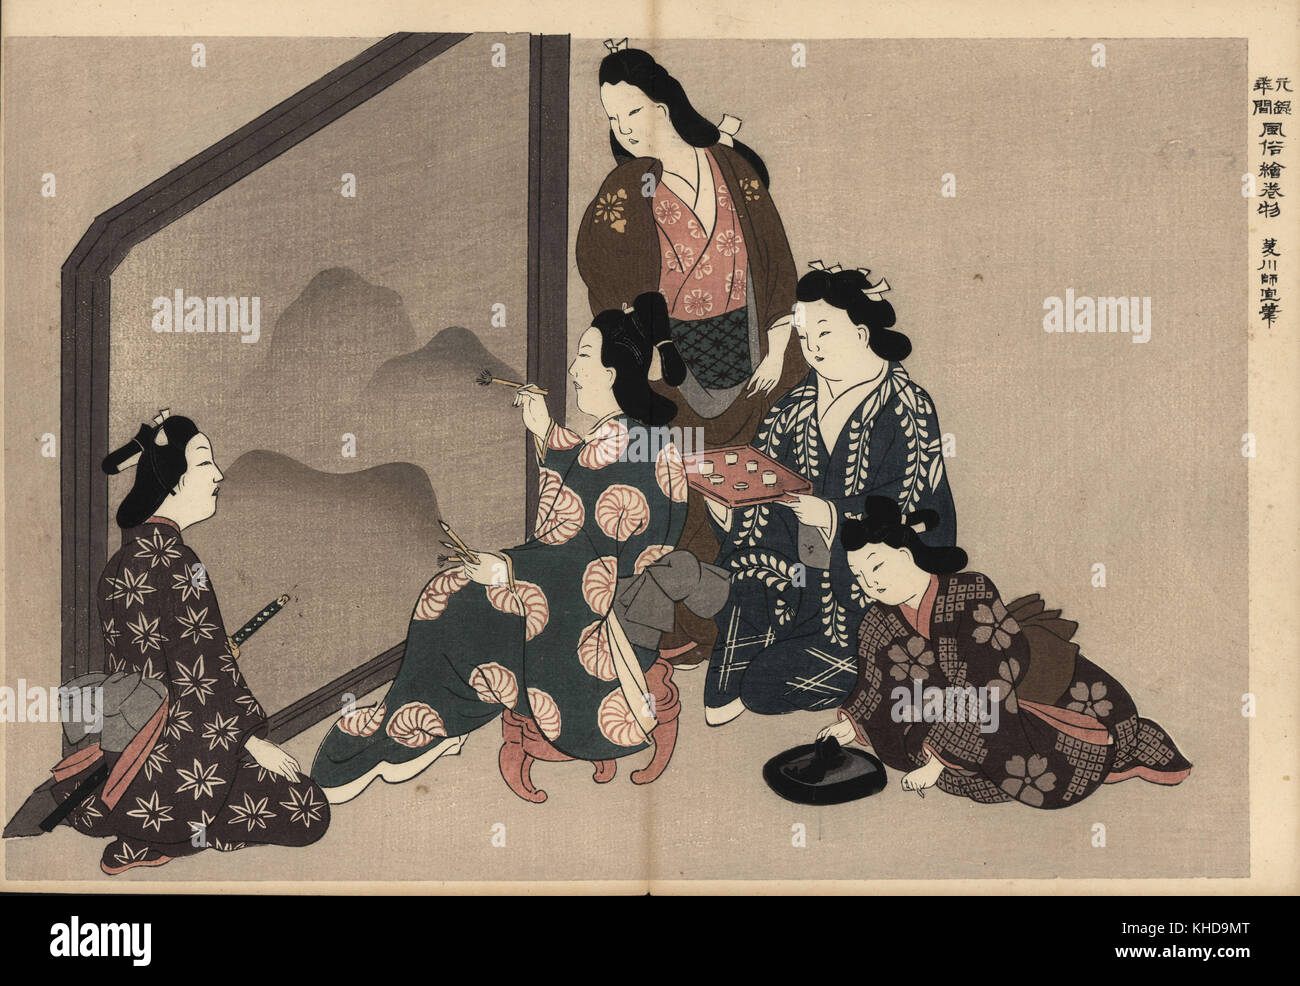 Une grande peinture courtisanes sumi-e (peinture au lavis d'encre). Un client regarde samouraï, et une femme de kamuro prépare l'encre. Moronobu Hishikawa par gravure sur bois (1618-1694) de Fuzoku Emakimono, rouleau de la commerce de l'eau Tokyo, réimpression vers 1880. Banque D'Images